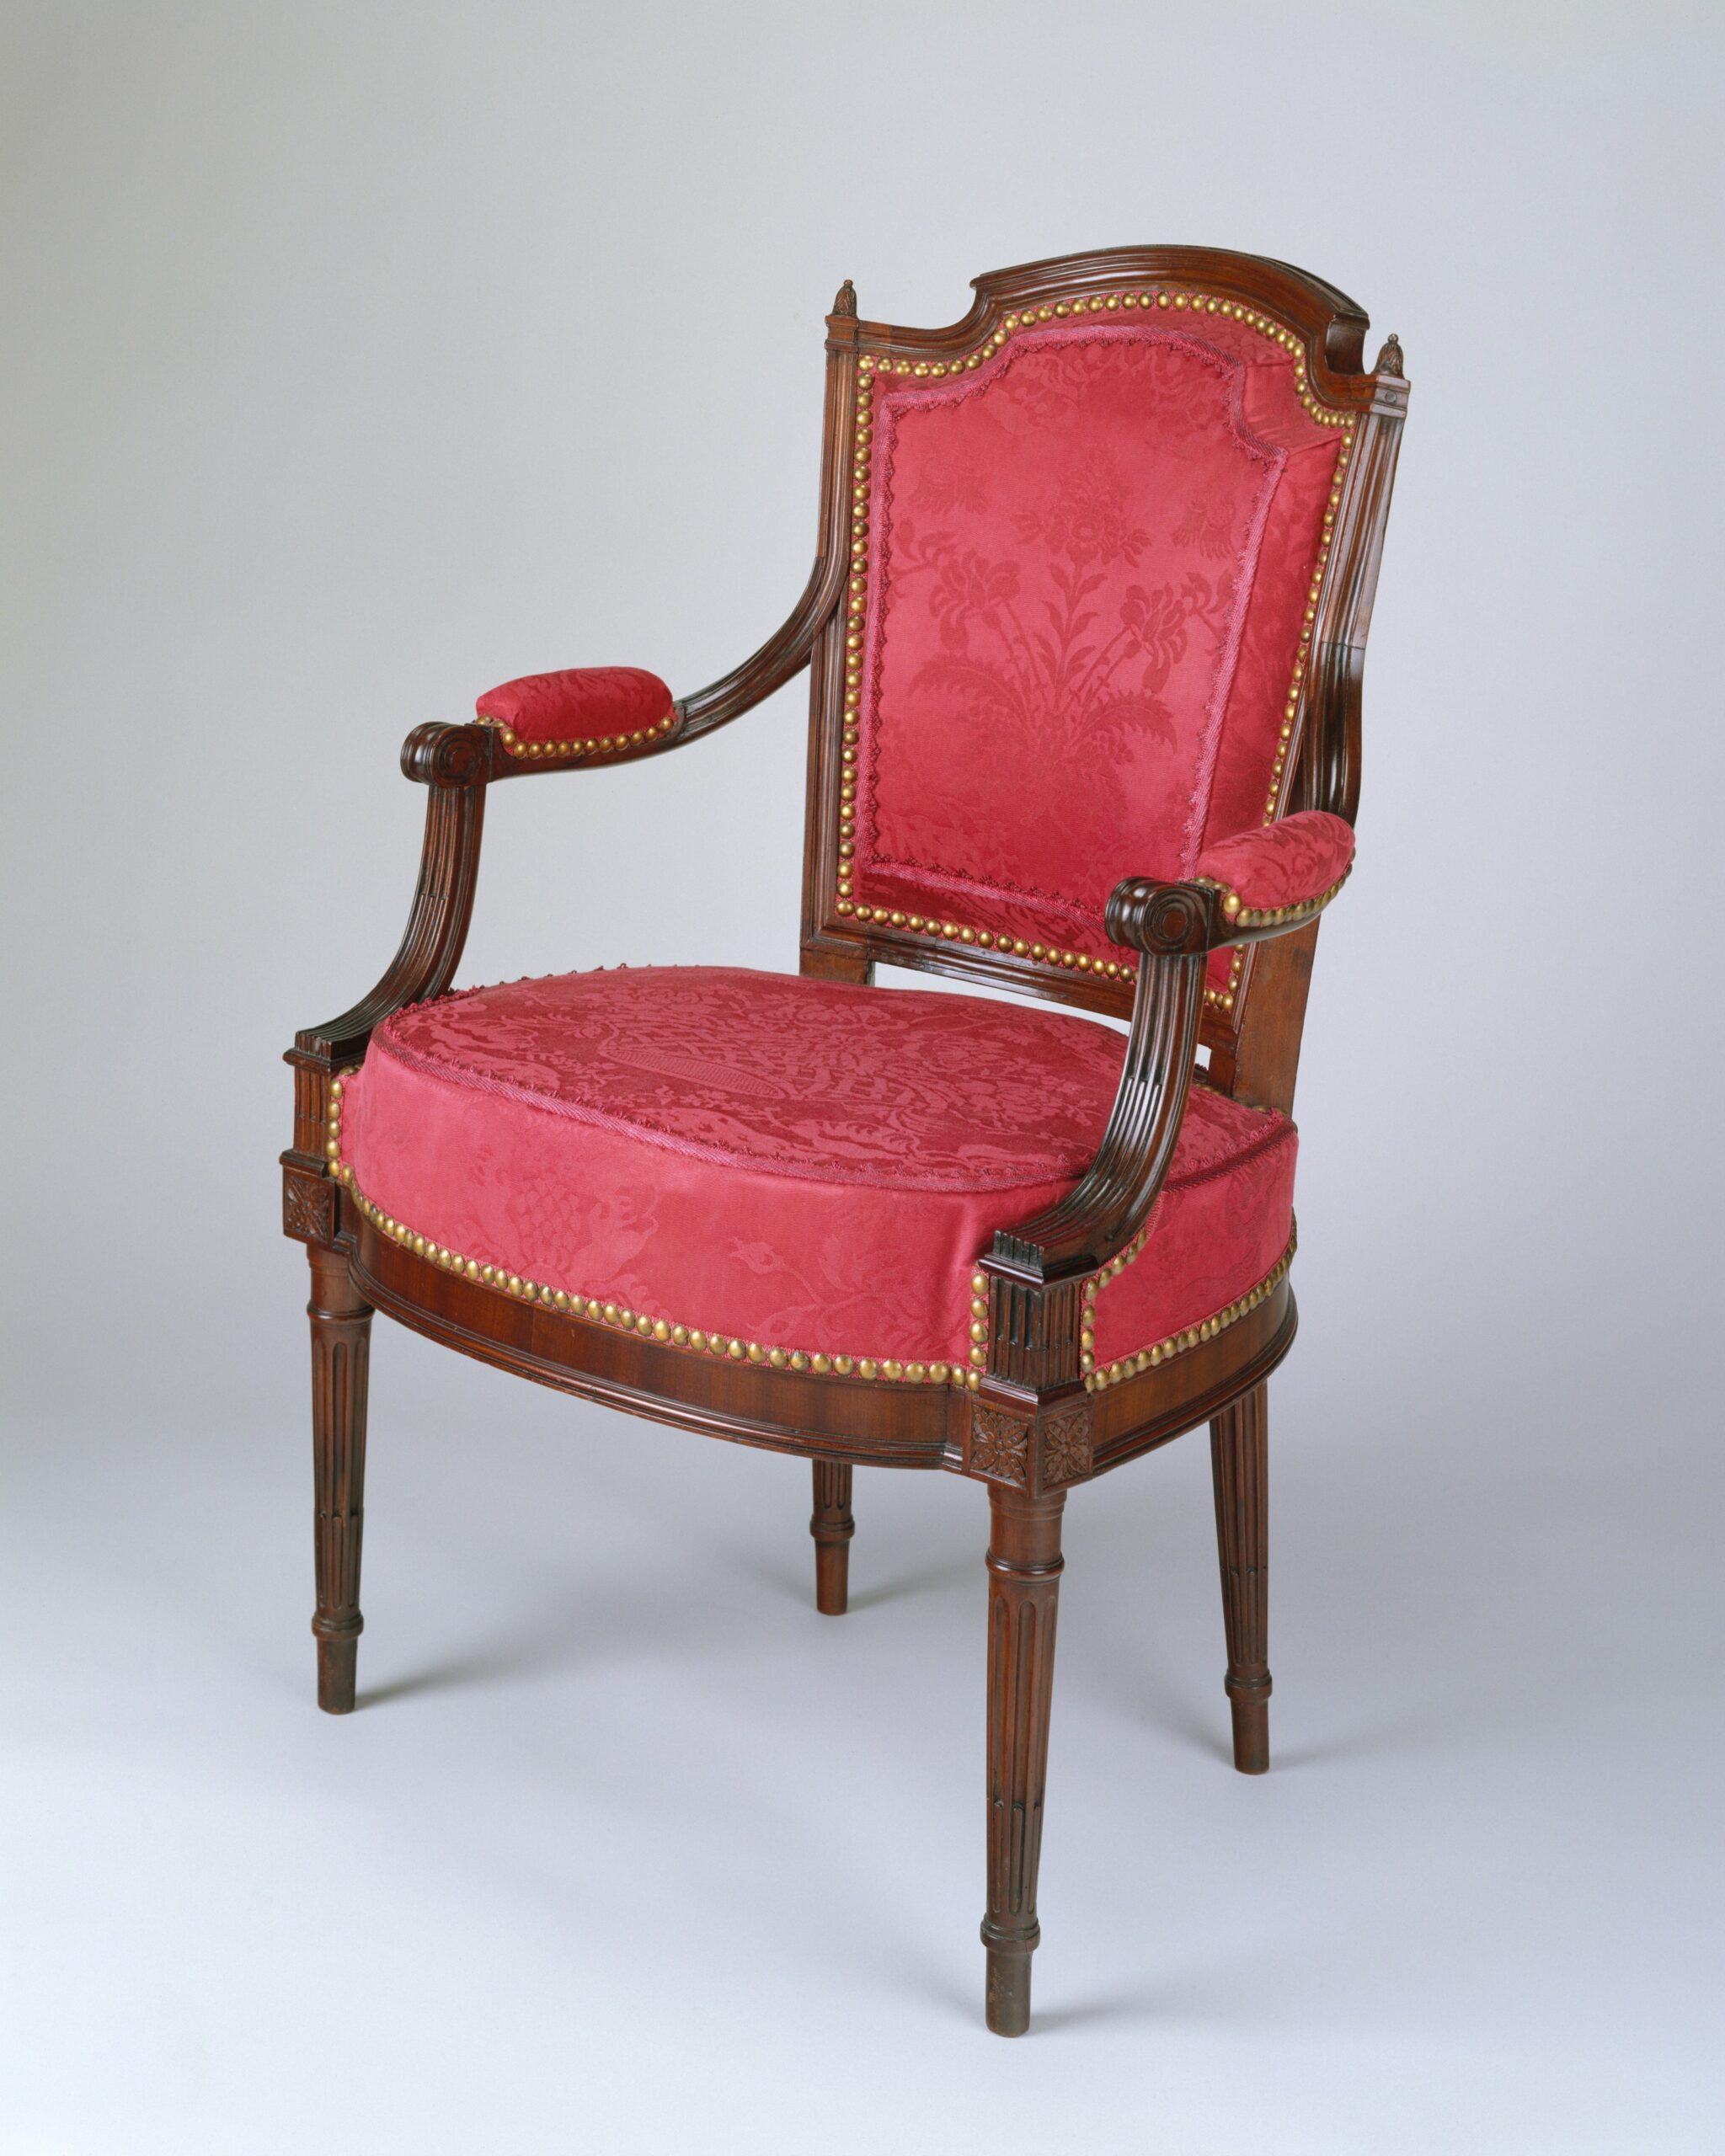 Ce fauteuil, incontestablement de style Louis XVI, a été fabriqué aux États-Unis ; il est attribué à l’ébéniste américain Adam Hains (1768-après1820). Parmi les émigrés français débarquant à Philadelphie ou New York dans les années 1790, fuyant la Révolution, certains étaient artisans. Ils ont repris leur activité professionnelle, introduisant les styles français, notamment le dernier qu’ils ont connu, le style Louis XVI.